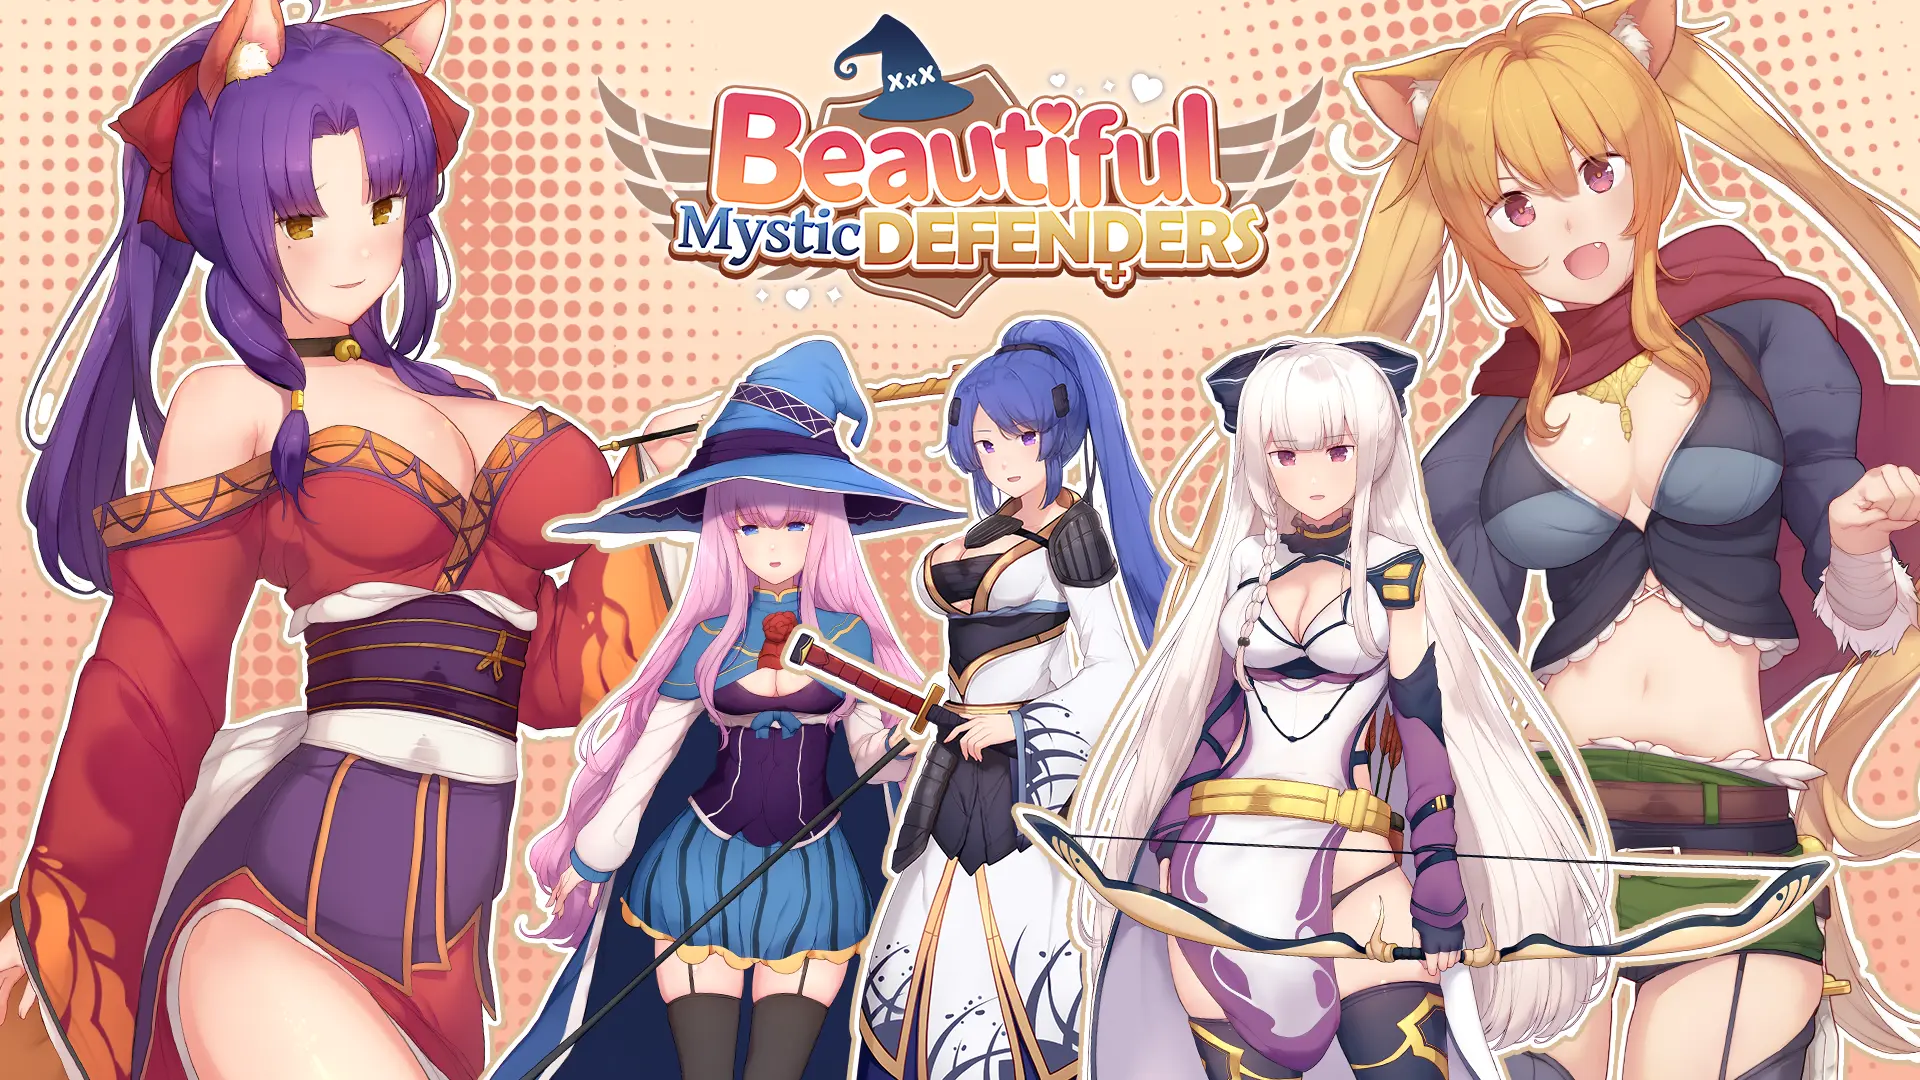 Beautiful Mystic Defenders main image